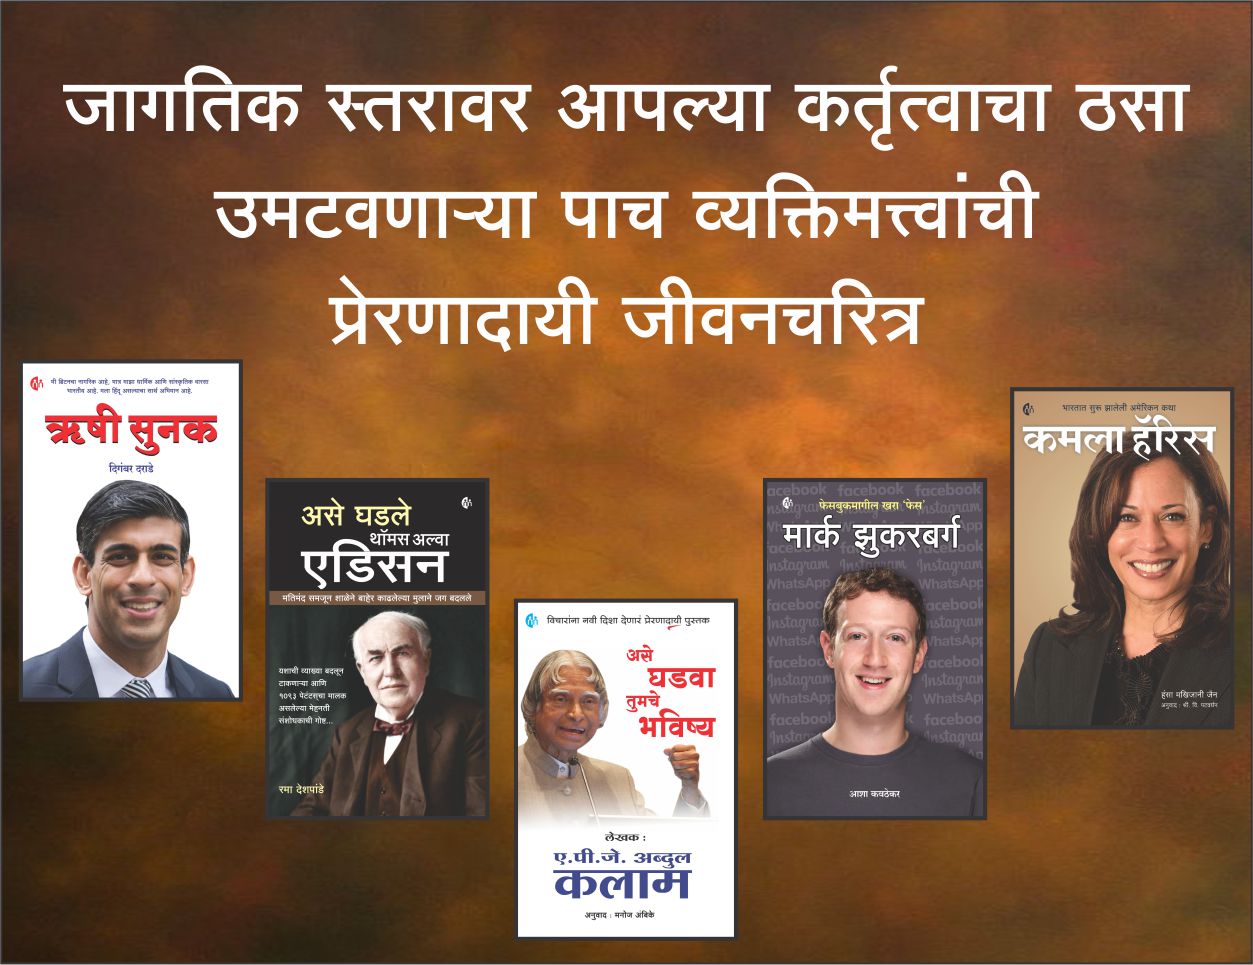 जागतिक स्तरावर आपल्या कर्तृत्वाचा ठसा उमटवणाऱ्या पाच व्यक्तिमत्त्वांची प्रेरणादायी मराठी जीवनचरित्र. (Set of 5 Marathi Books)